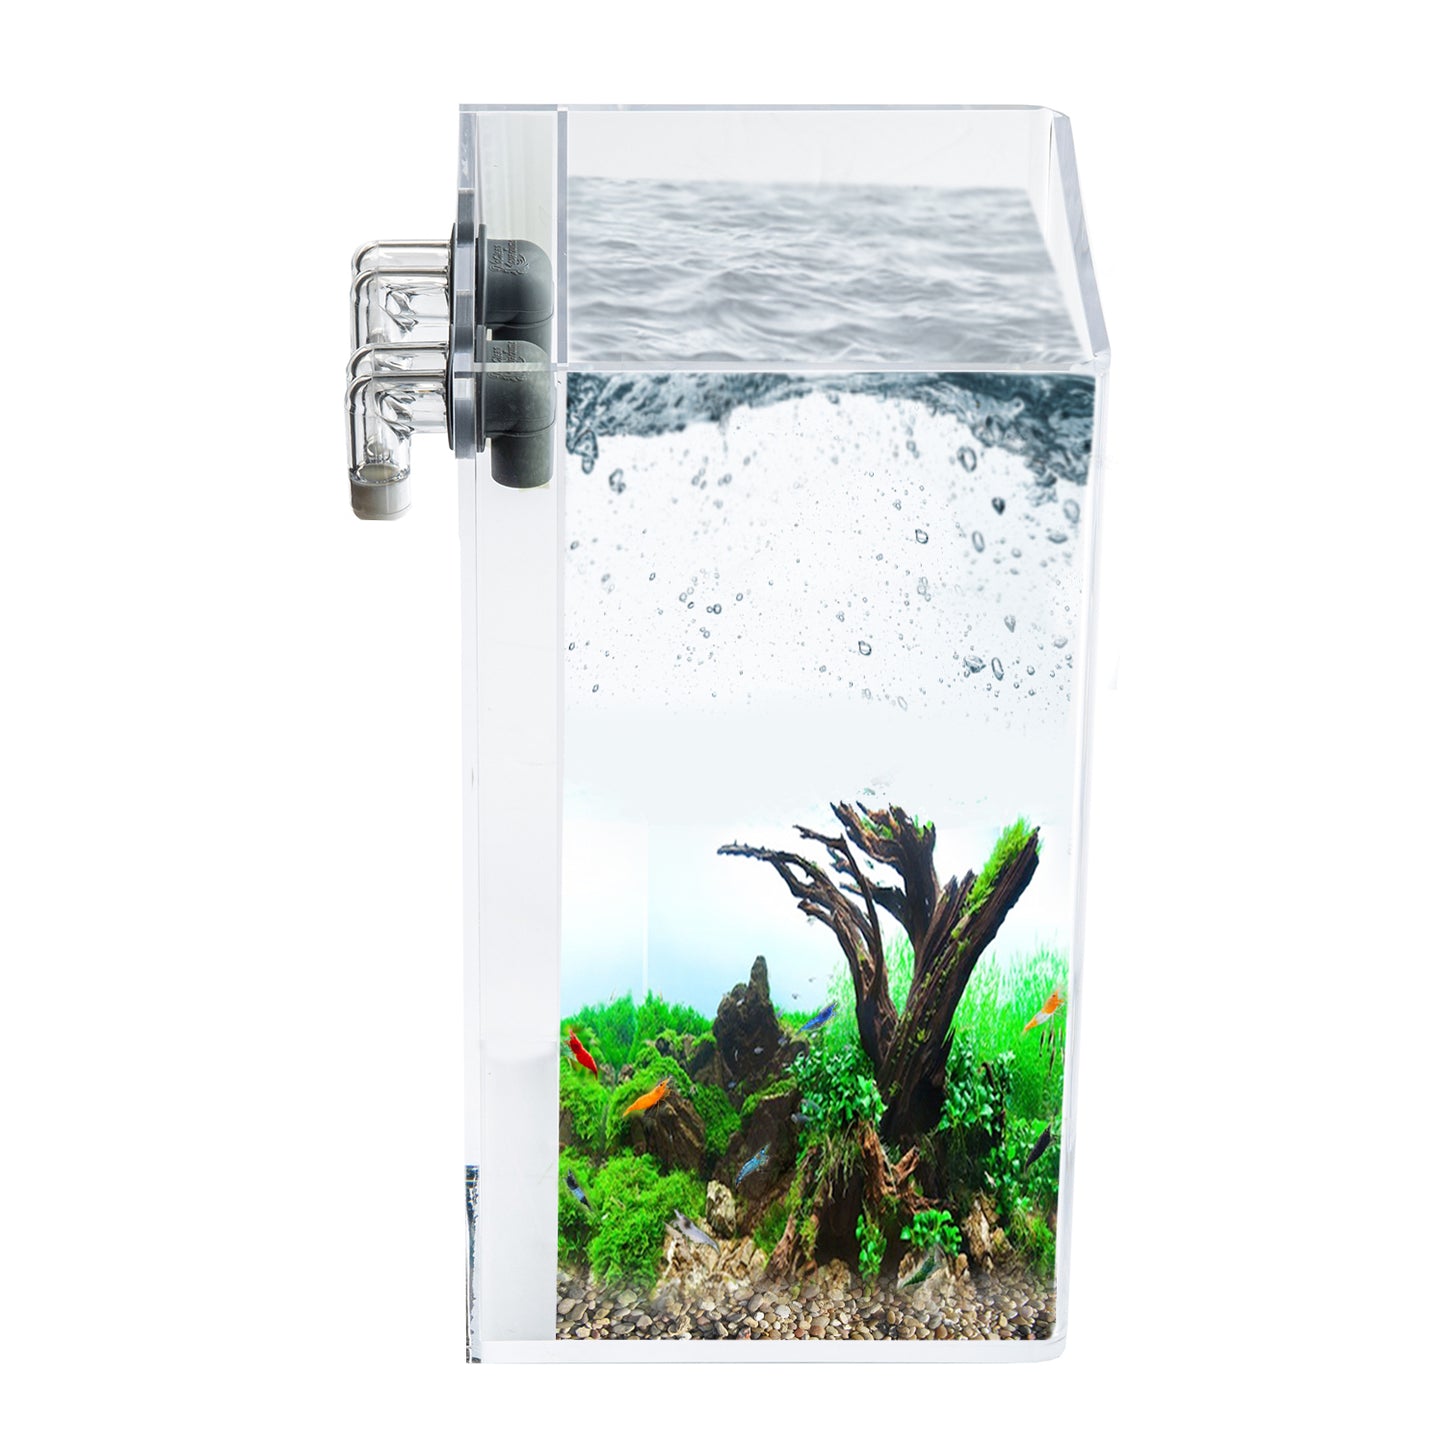 2.5 Gallon Tall Self-Cleaning Aquarium Kit | Lid | Waterfall Basin | Dazzle LED